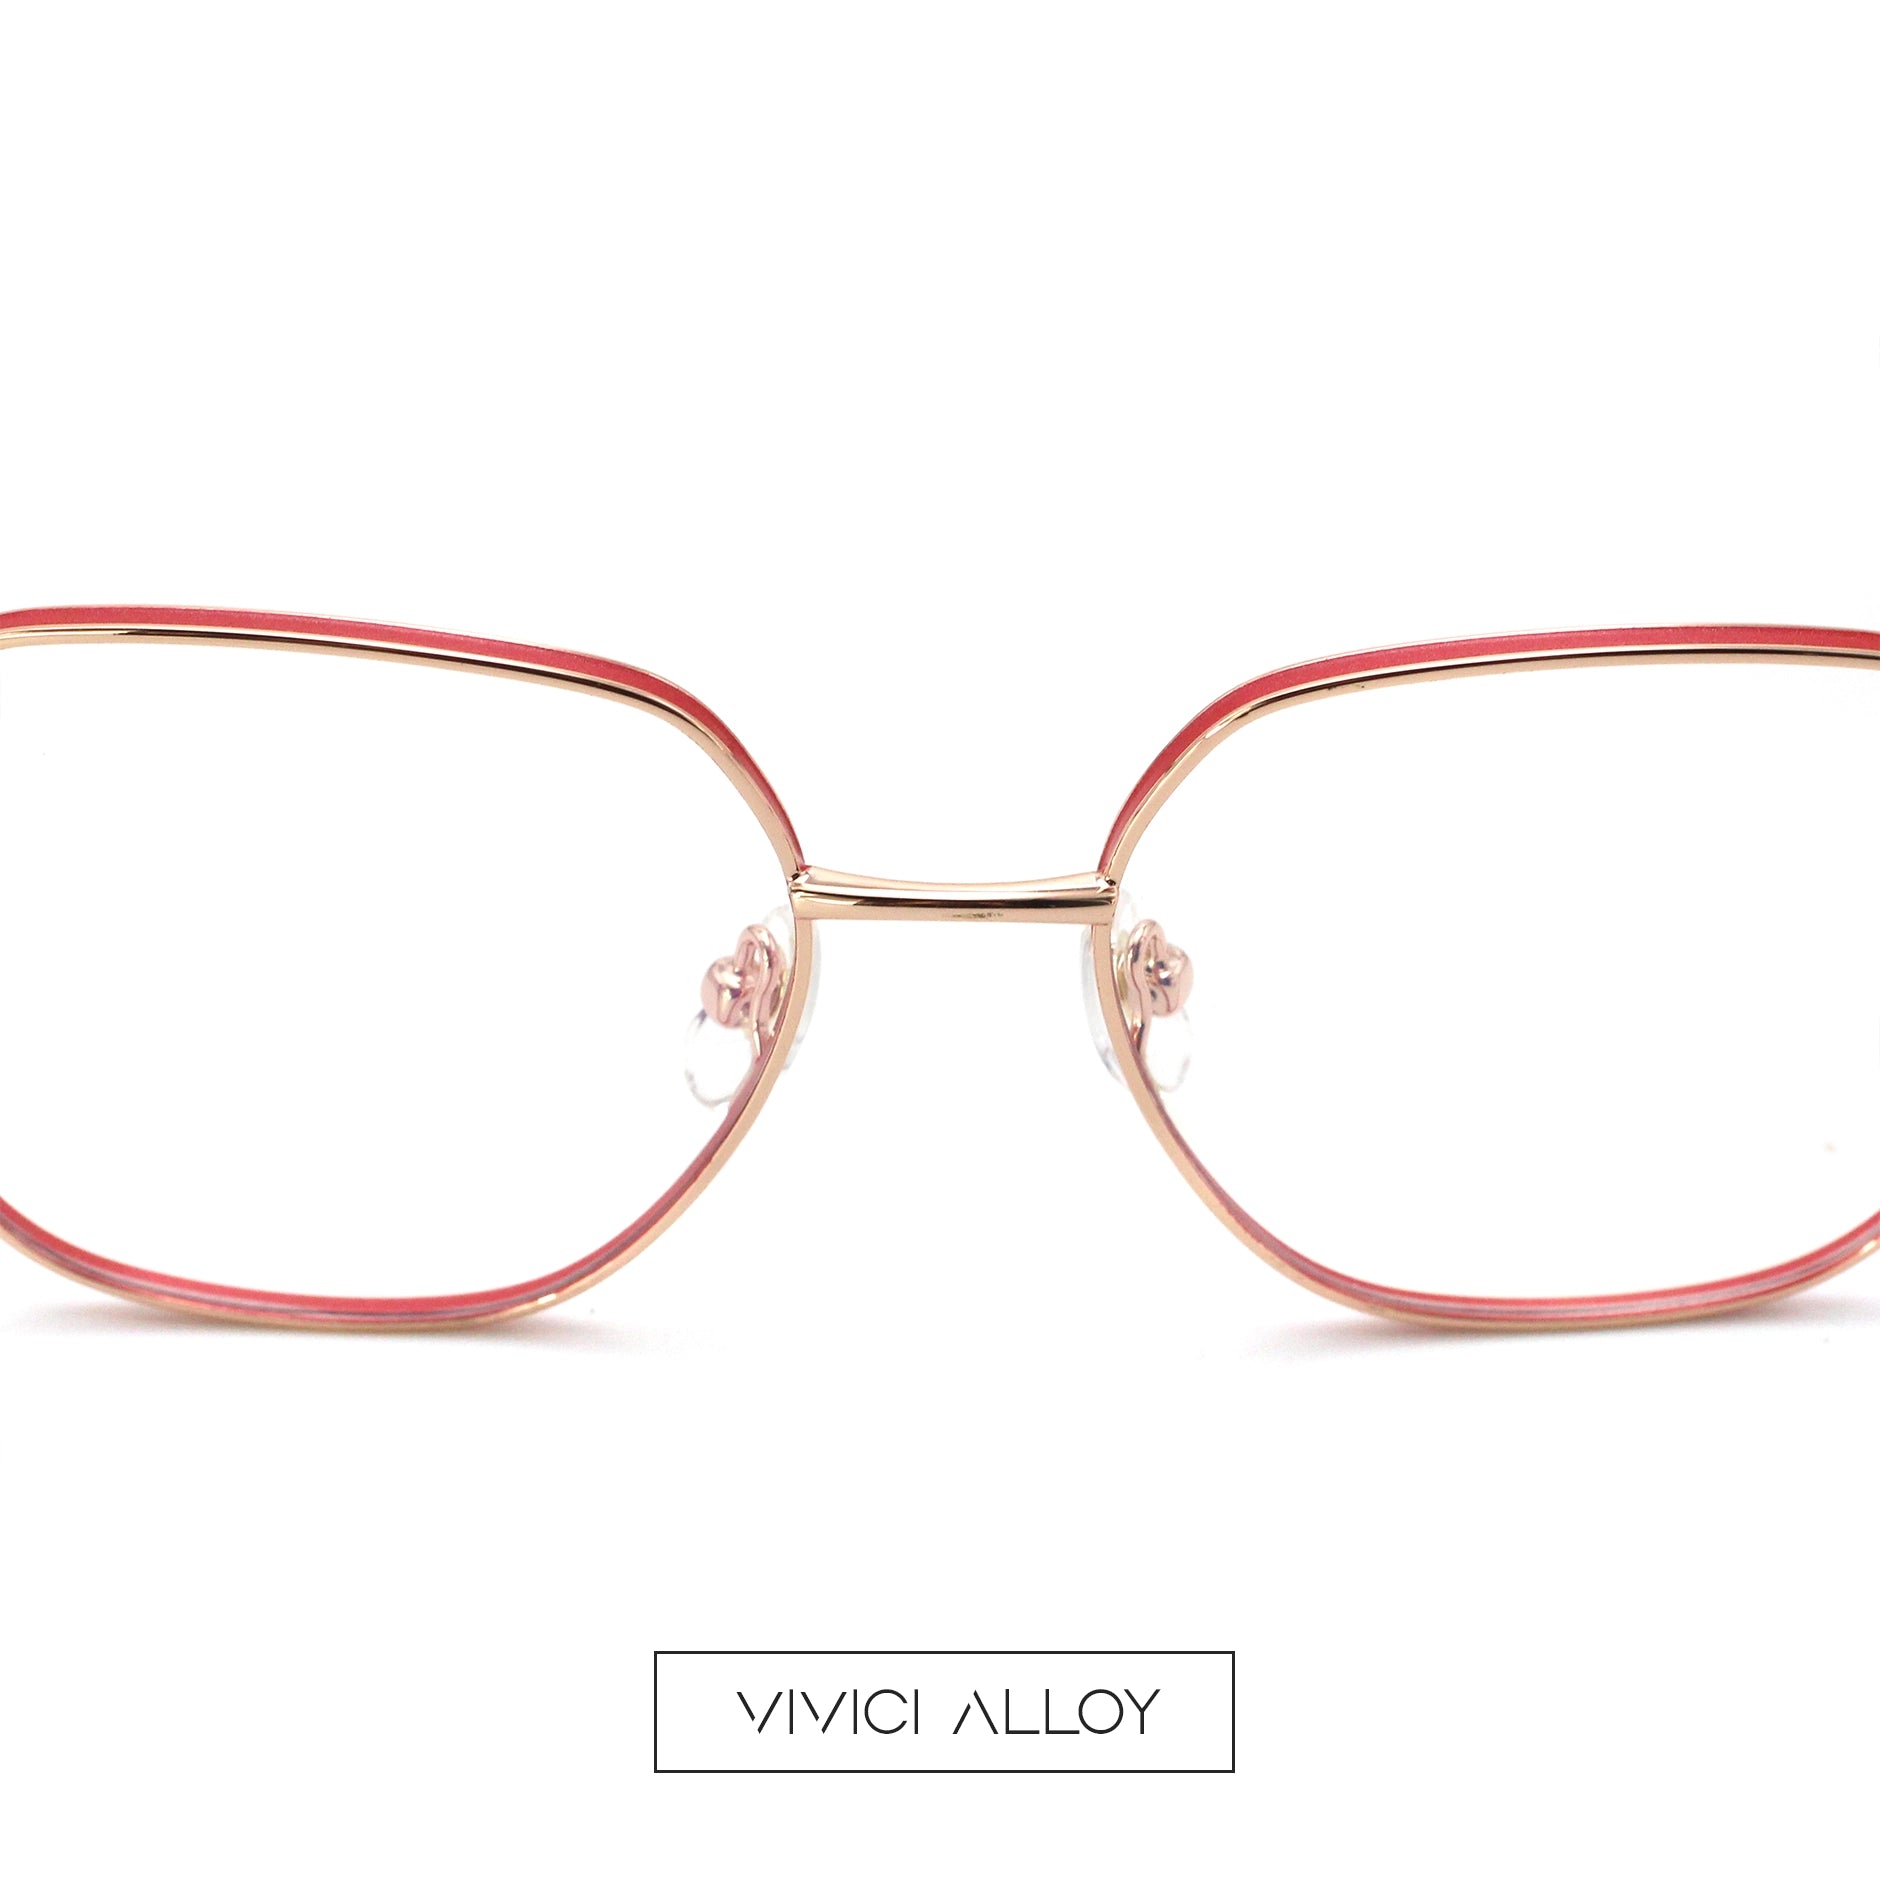 Clara Anthony Eyeglasses